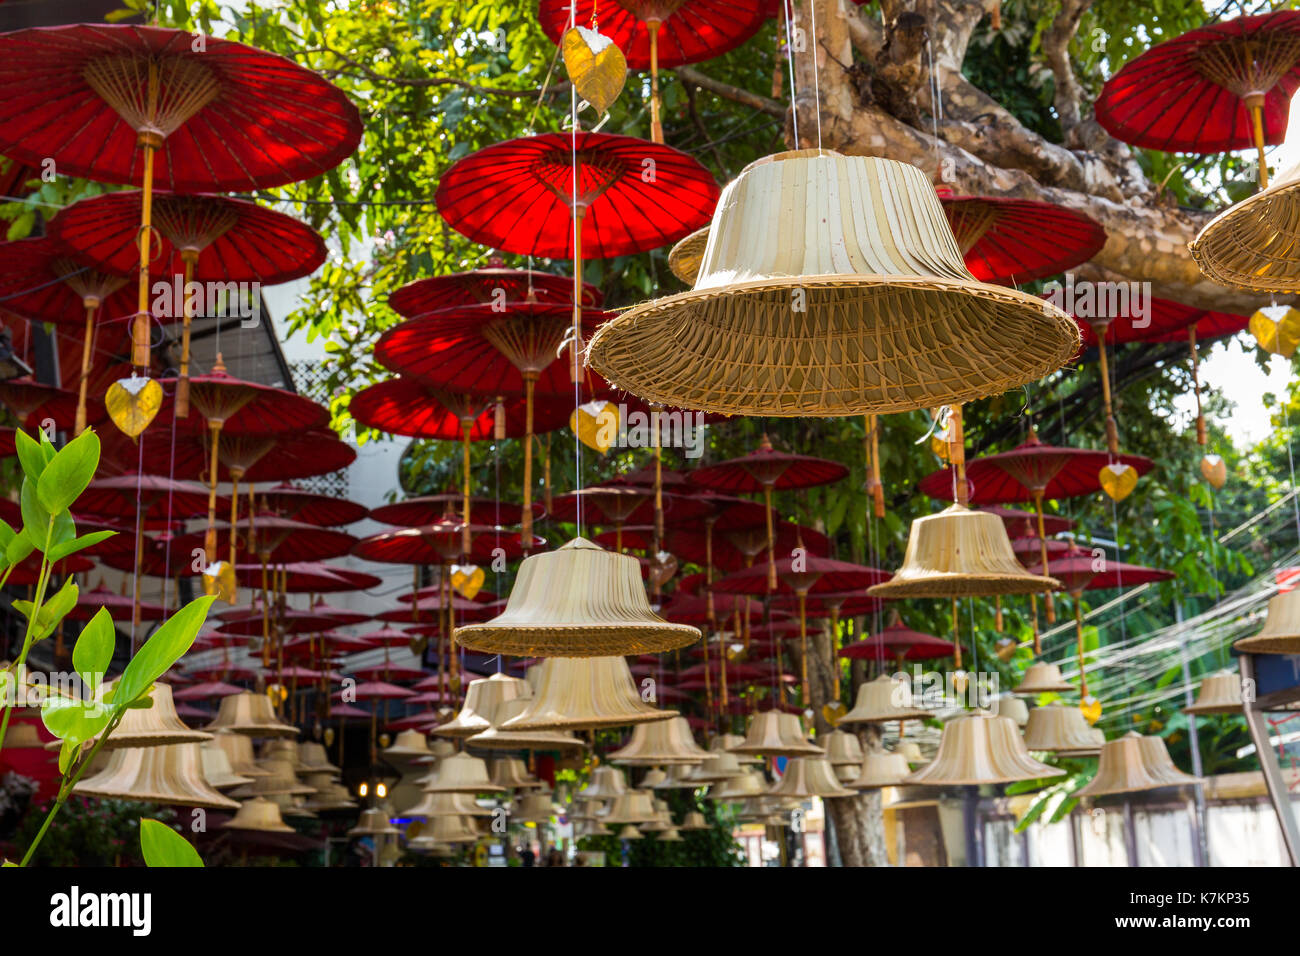 Buddhistische Glocken hängen Street Art Dekoration in Chiang Mai, Thailand. Stockfoto